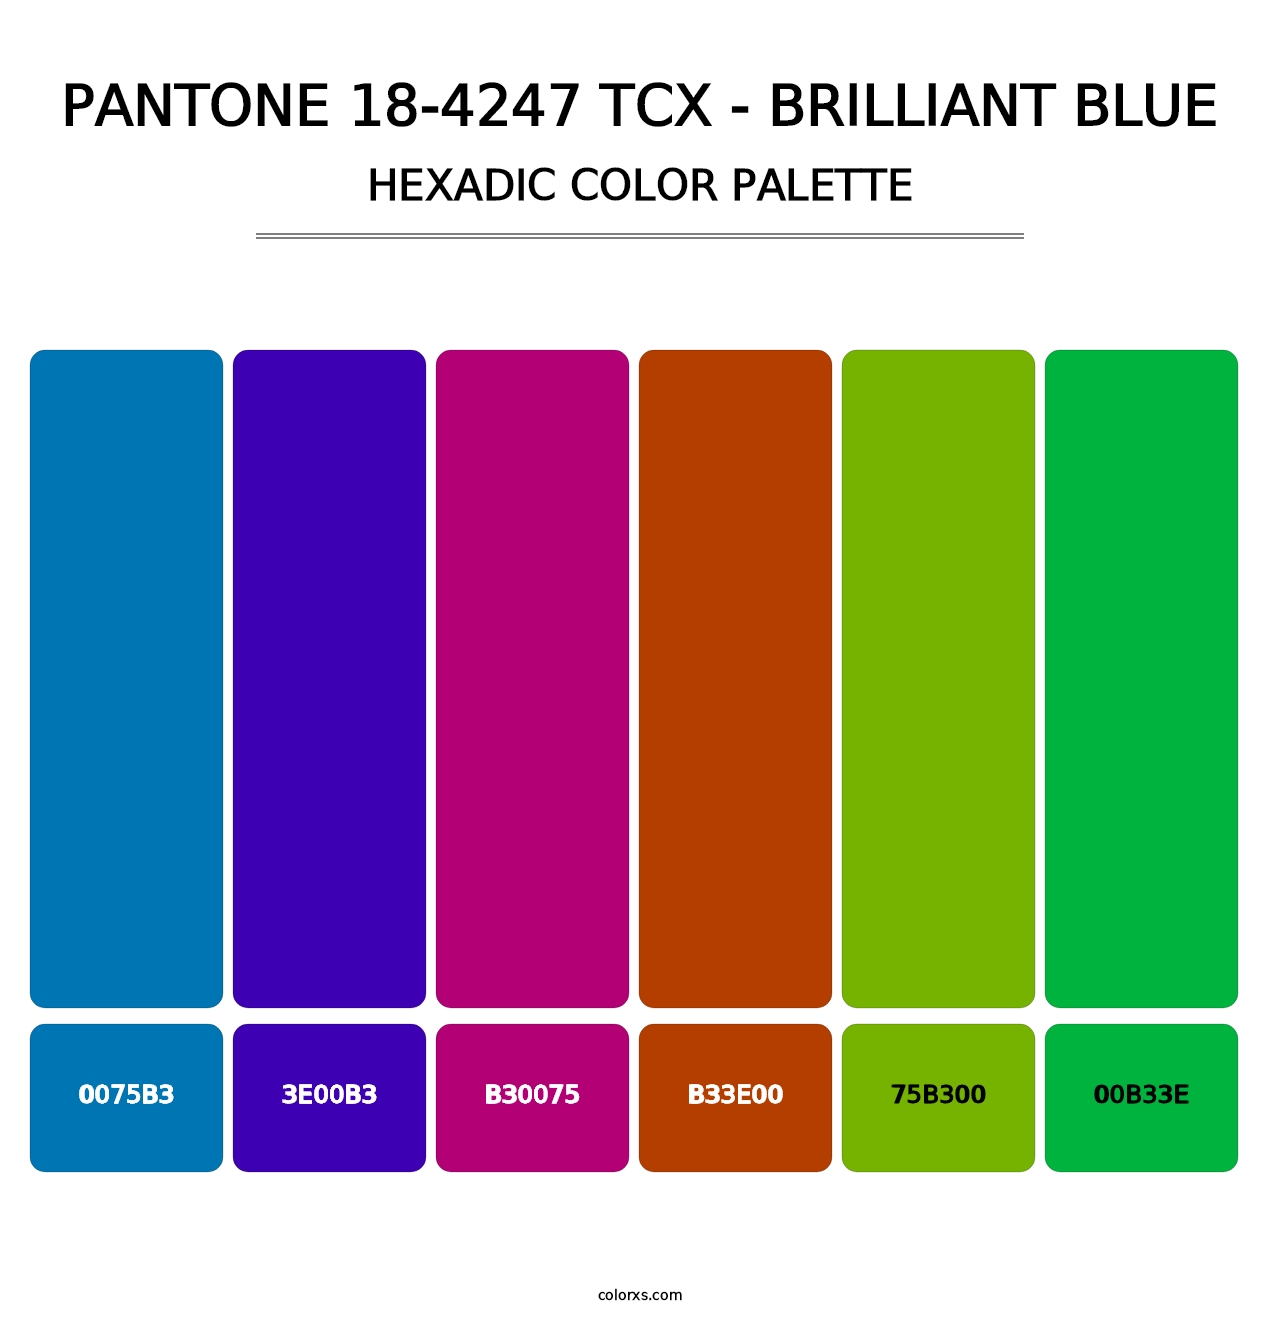 PANTONE 18-4247 TCX - Brilliant Blue - Hexadic Color Palette